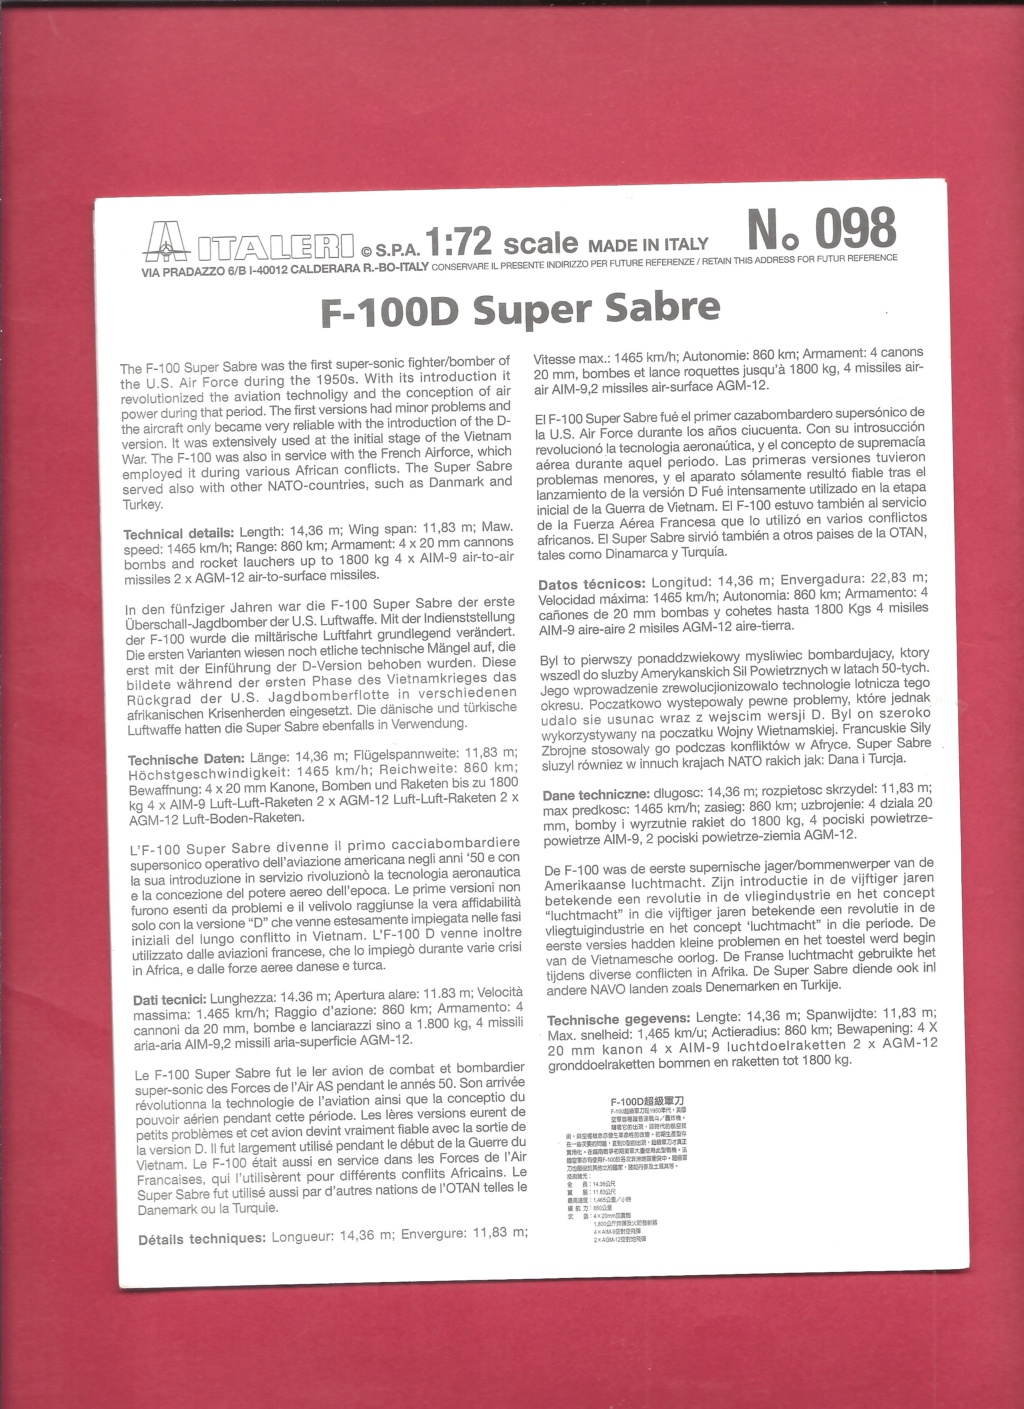 [ITALERI] NORTH AMERICAN F 100 D SUPER SABRE 1/72ème Réf 098 Ital1001